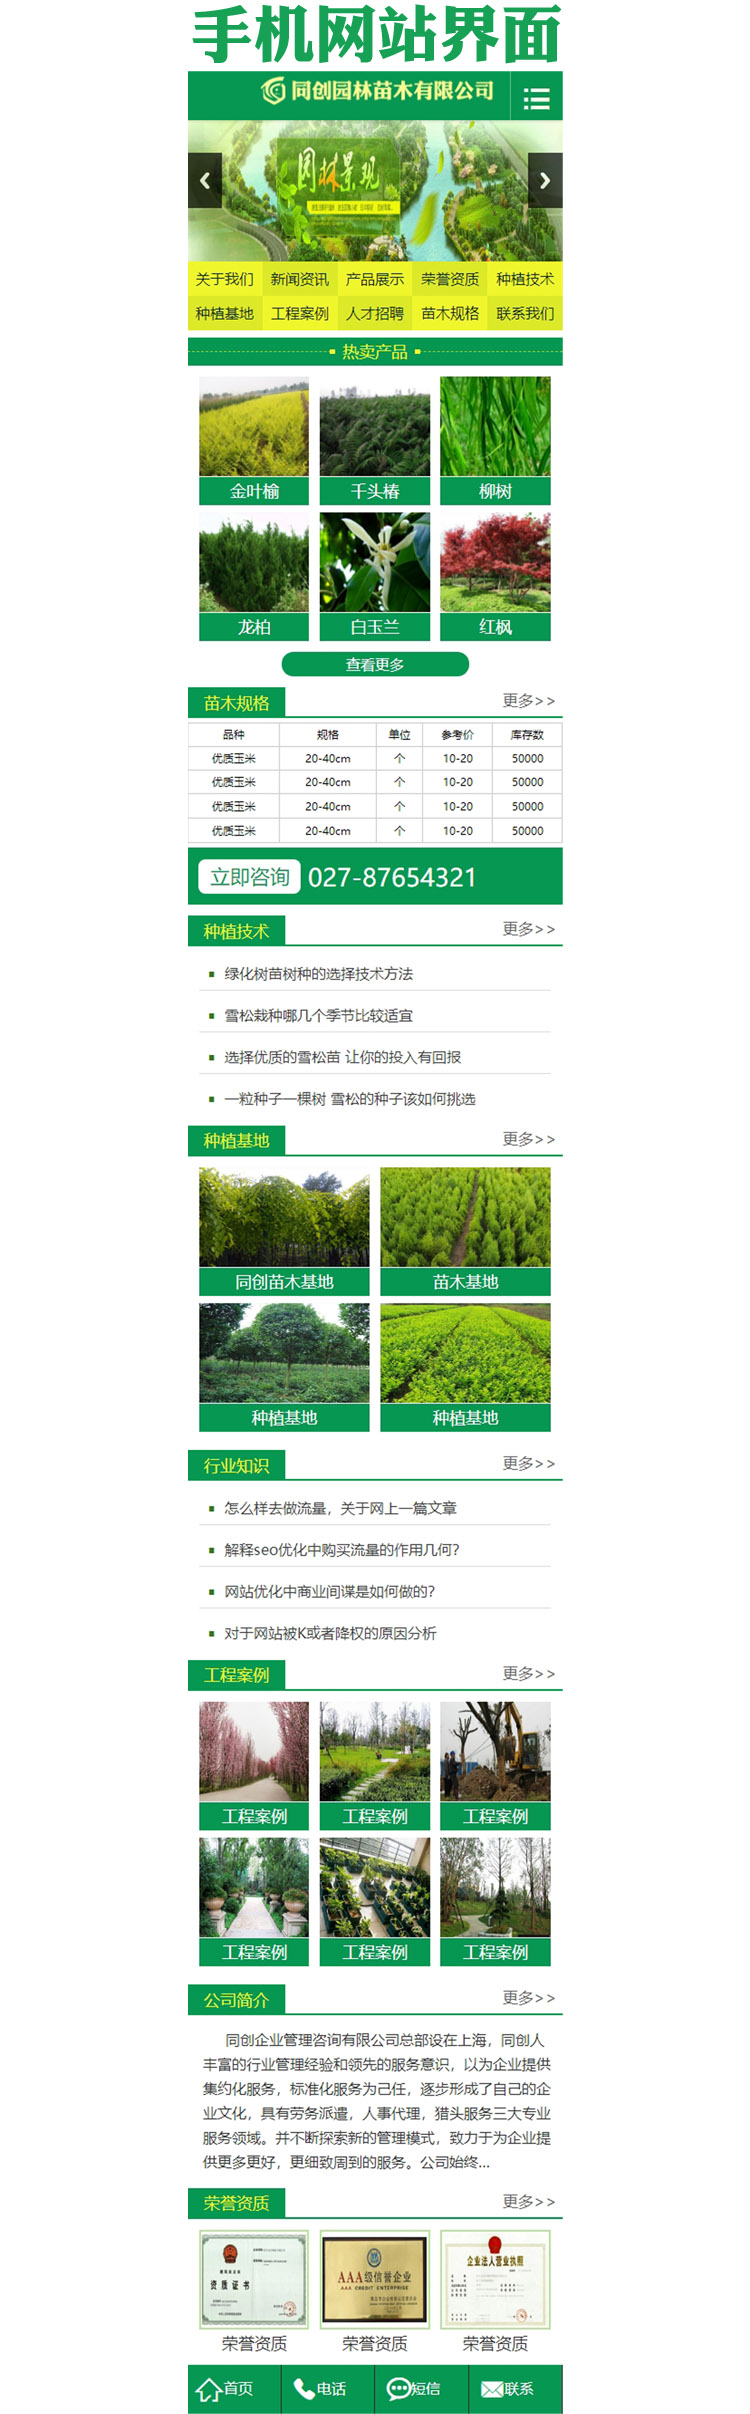 苗木花圃园林种植网站源码模板程序-ZP019-3